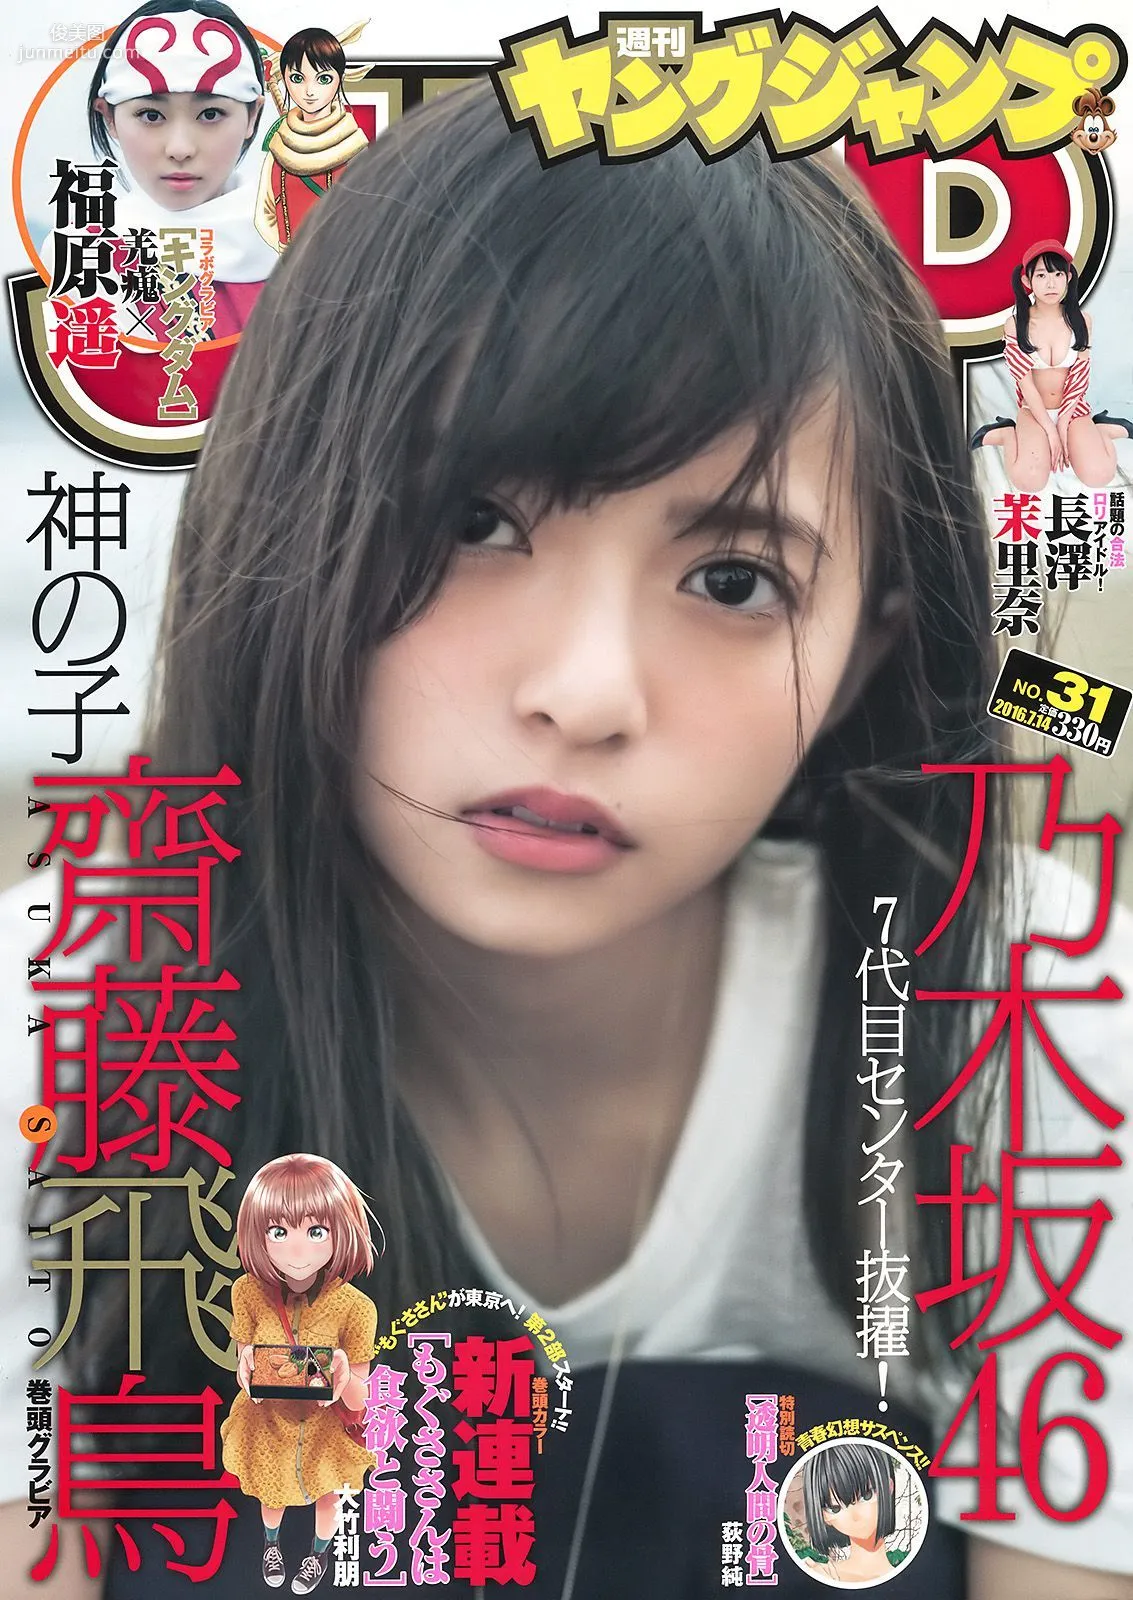 齋藤飛鳥 長澤茉里奈 福原遥 [Weekly Young Jump] 2016年No.31 写真杂志1